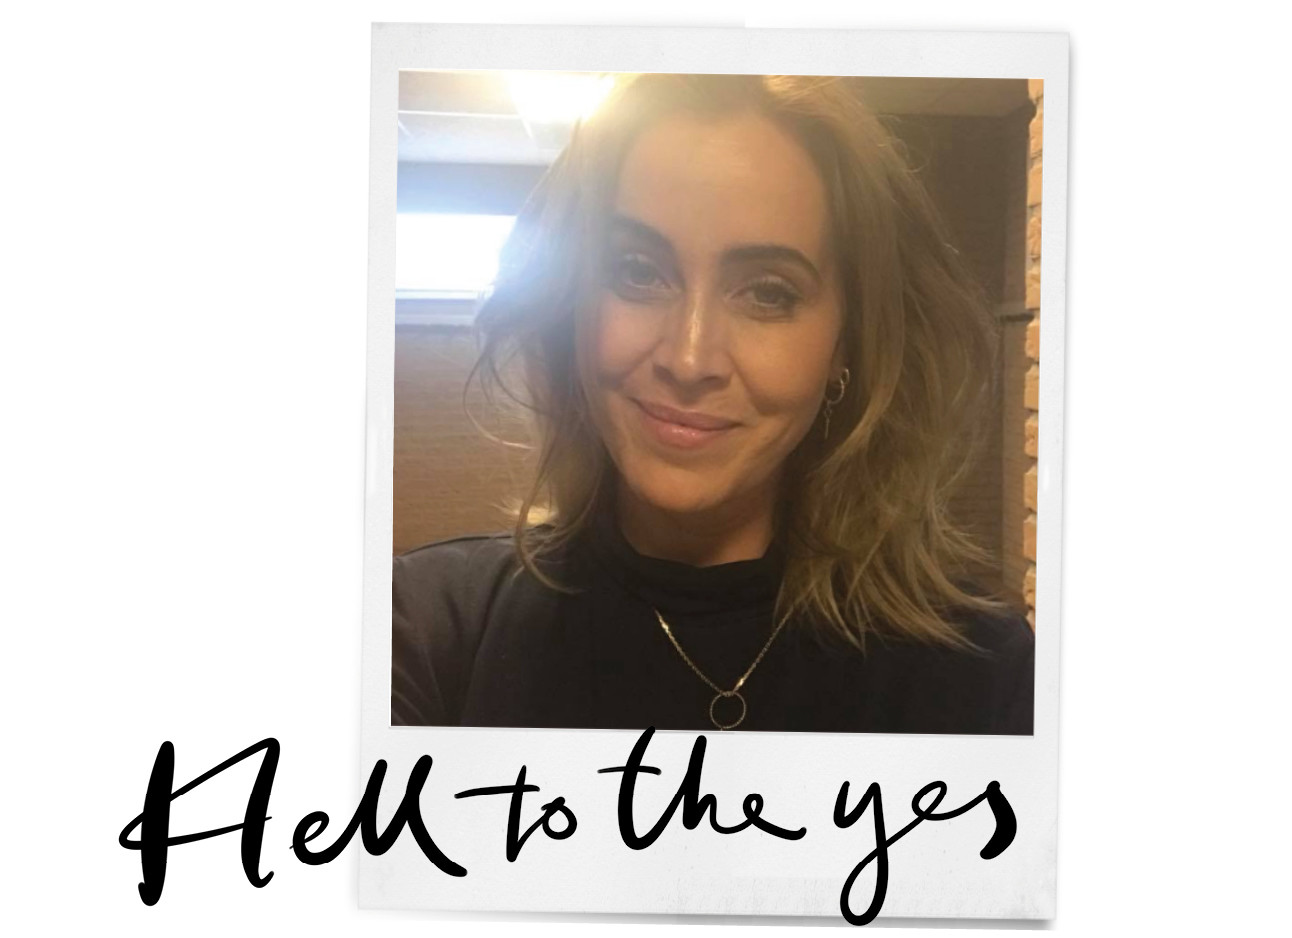 selfie van zangeres anouk in een polaroid met tekst hell to the yes